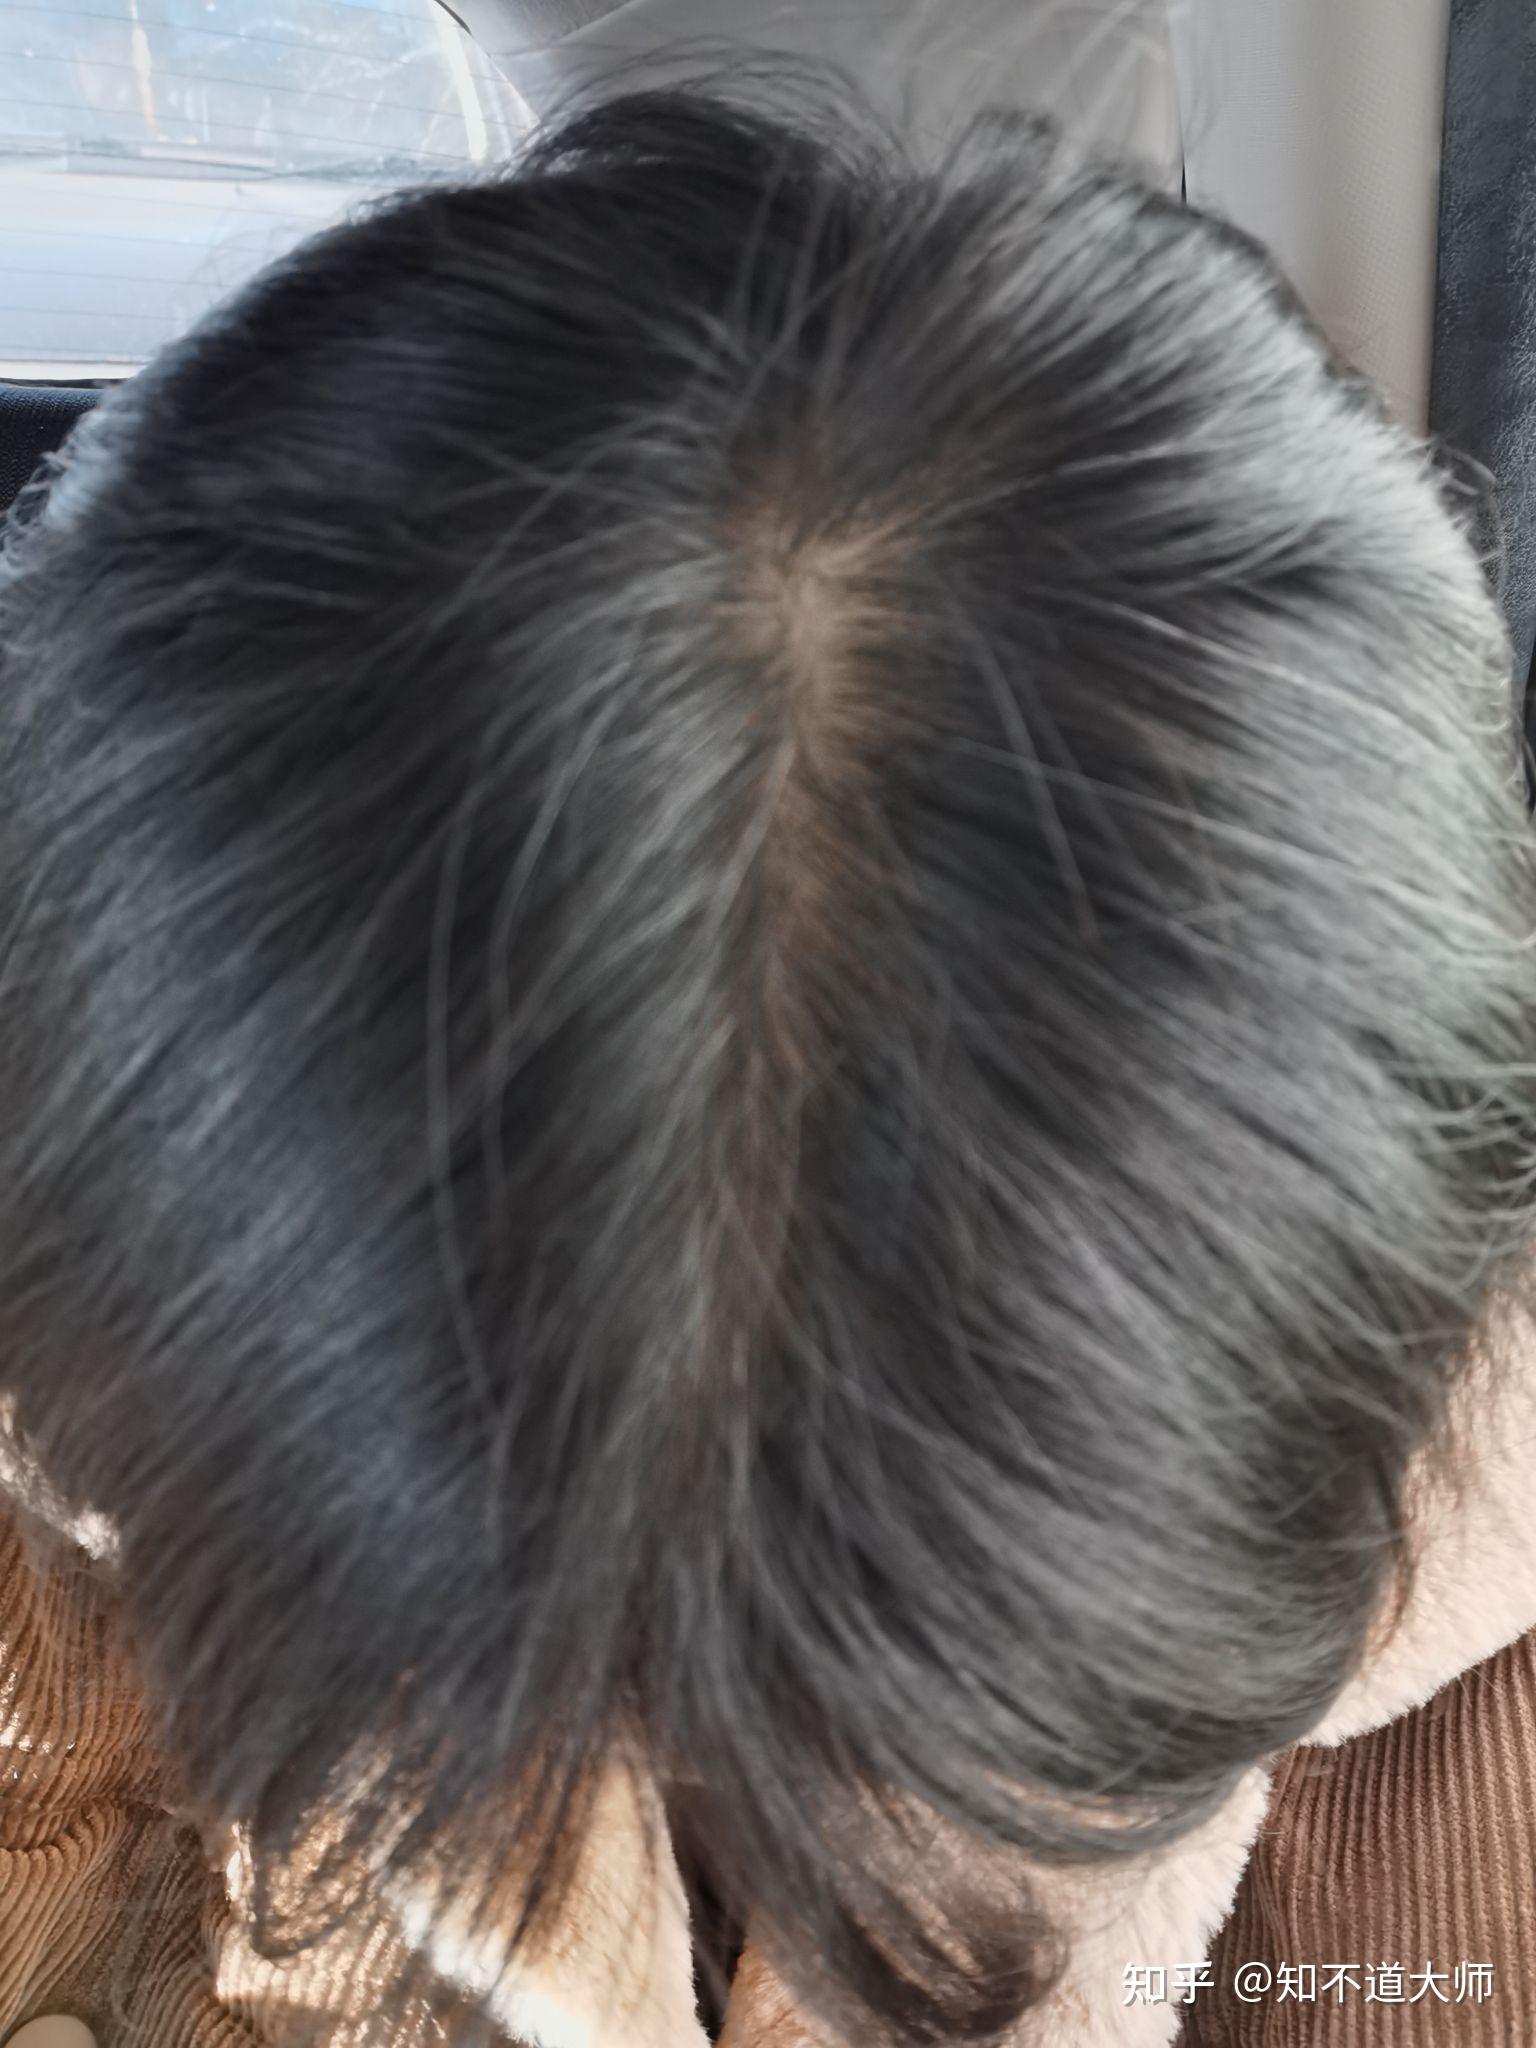 越多故在夏秋高温季节脂溢性脱发就特别严重,在冬春季症状会轻一点,这